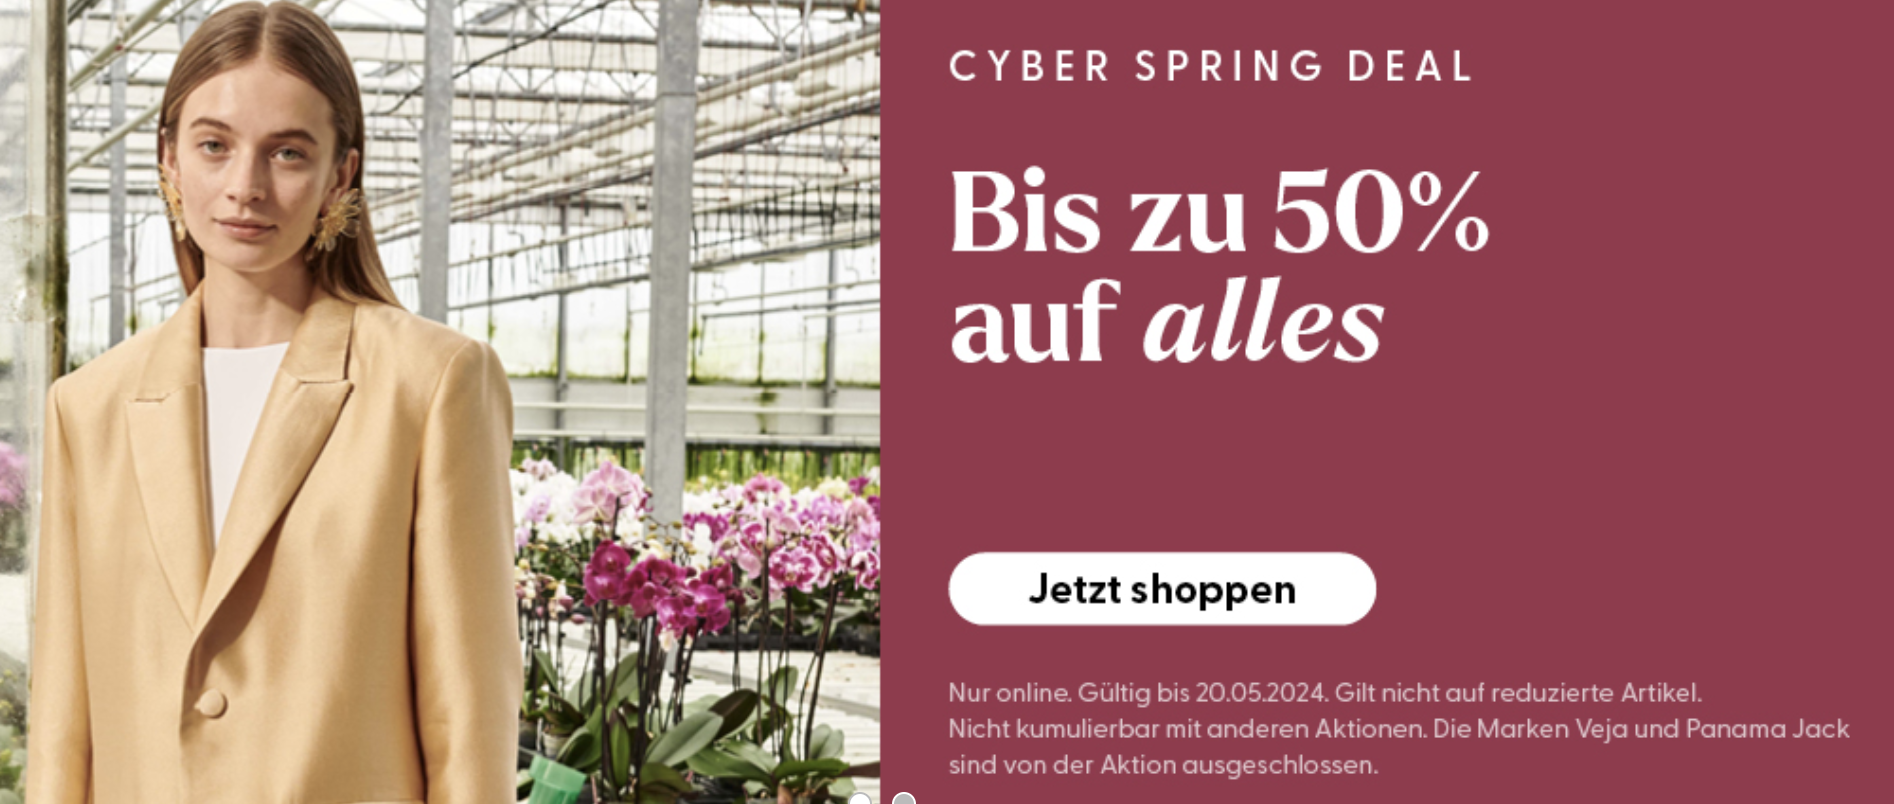 Cyber Spring Deal bis zu 50 % auf alles bei Ochsner Shoes